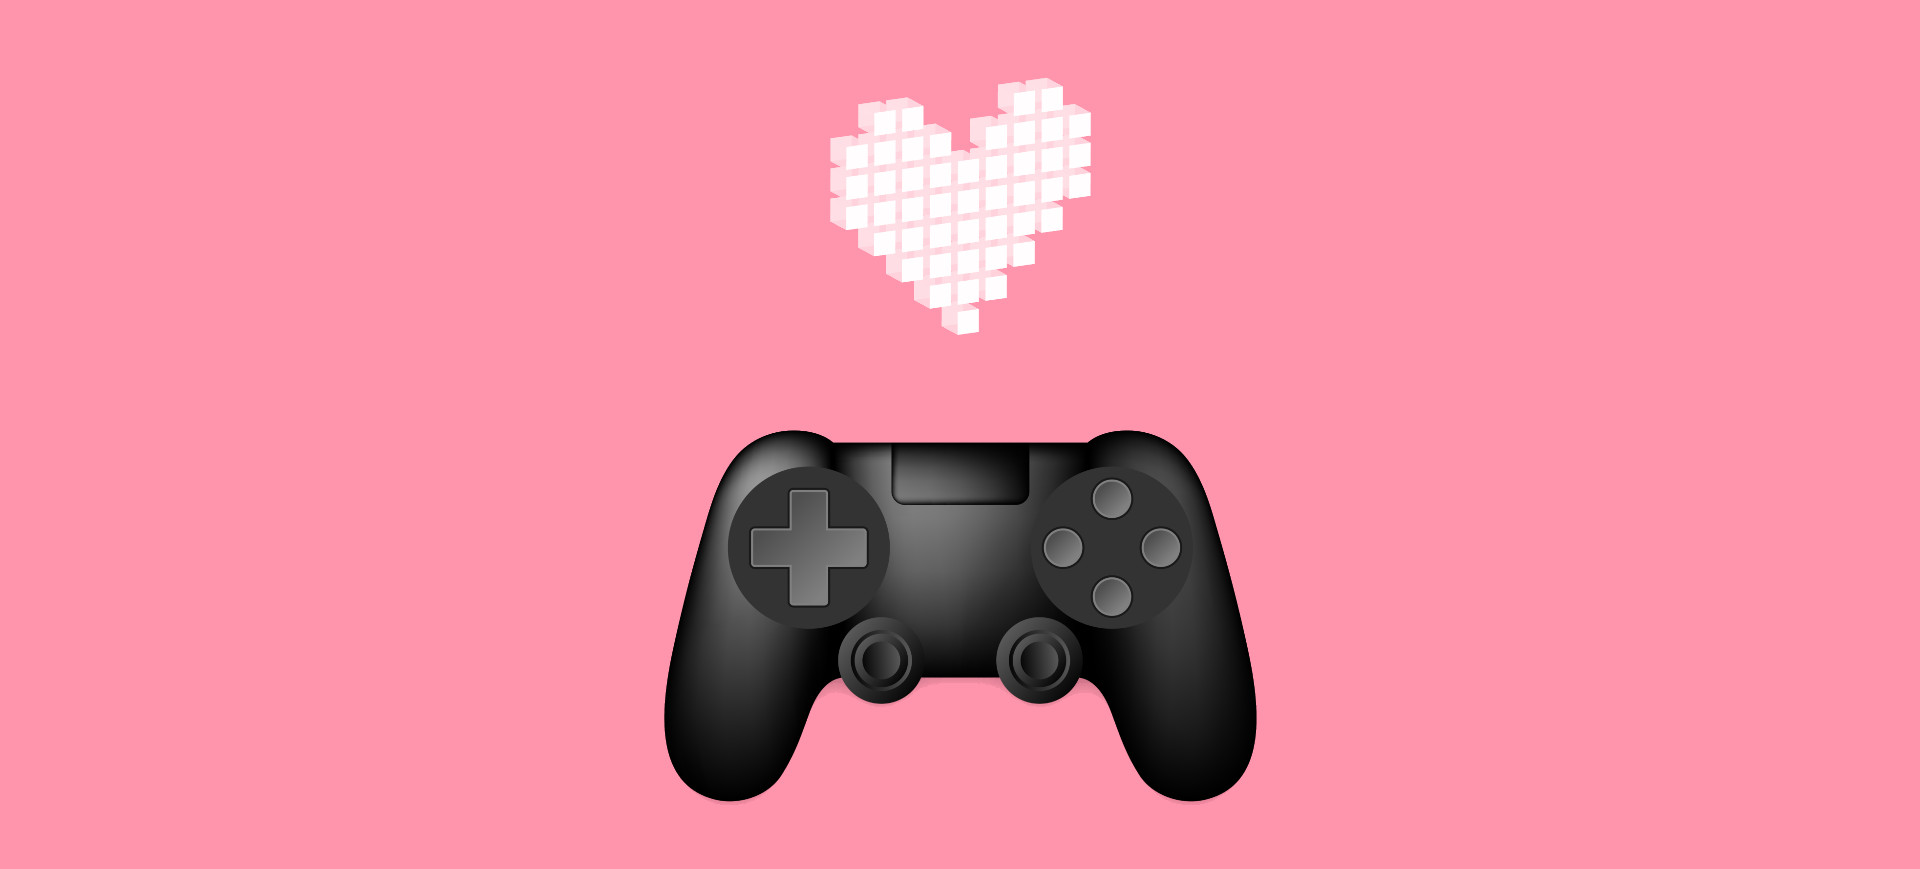 Ilustração de um controle de videogame, com um coração branco feito de pixels em cima, num fundo rosa, representando o Dia dos Namorados